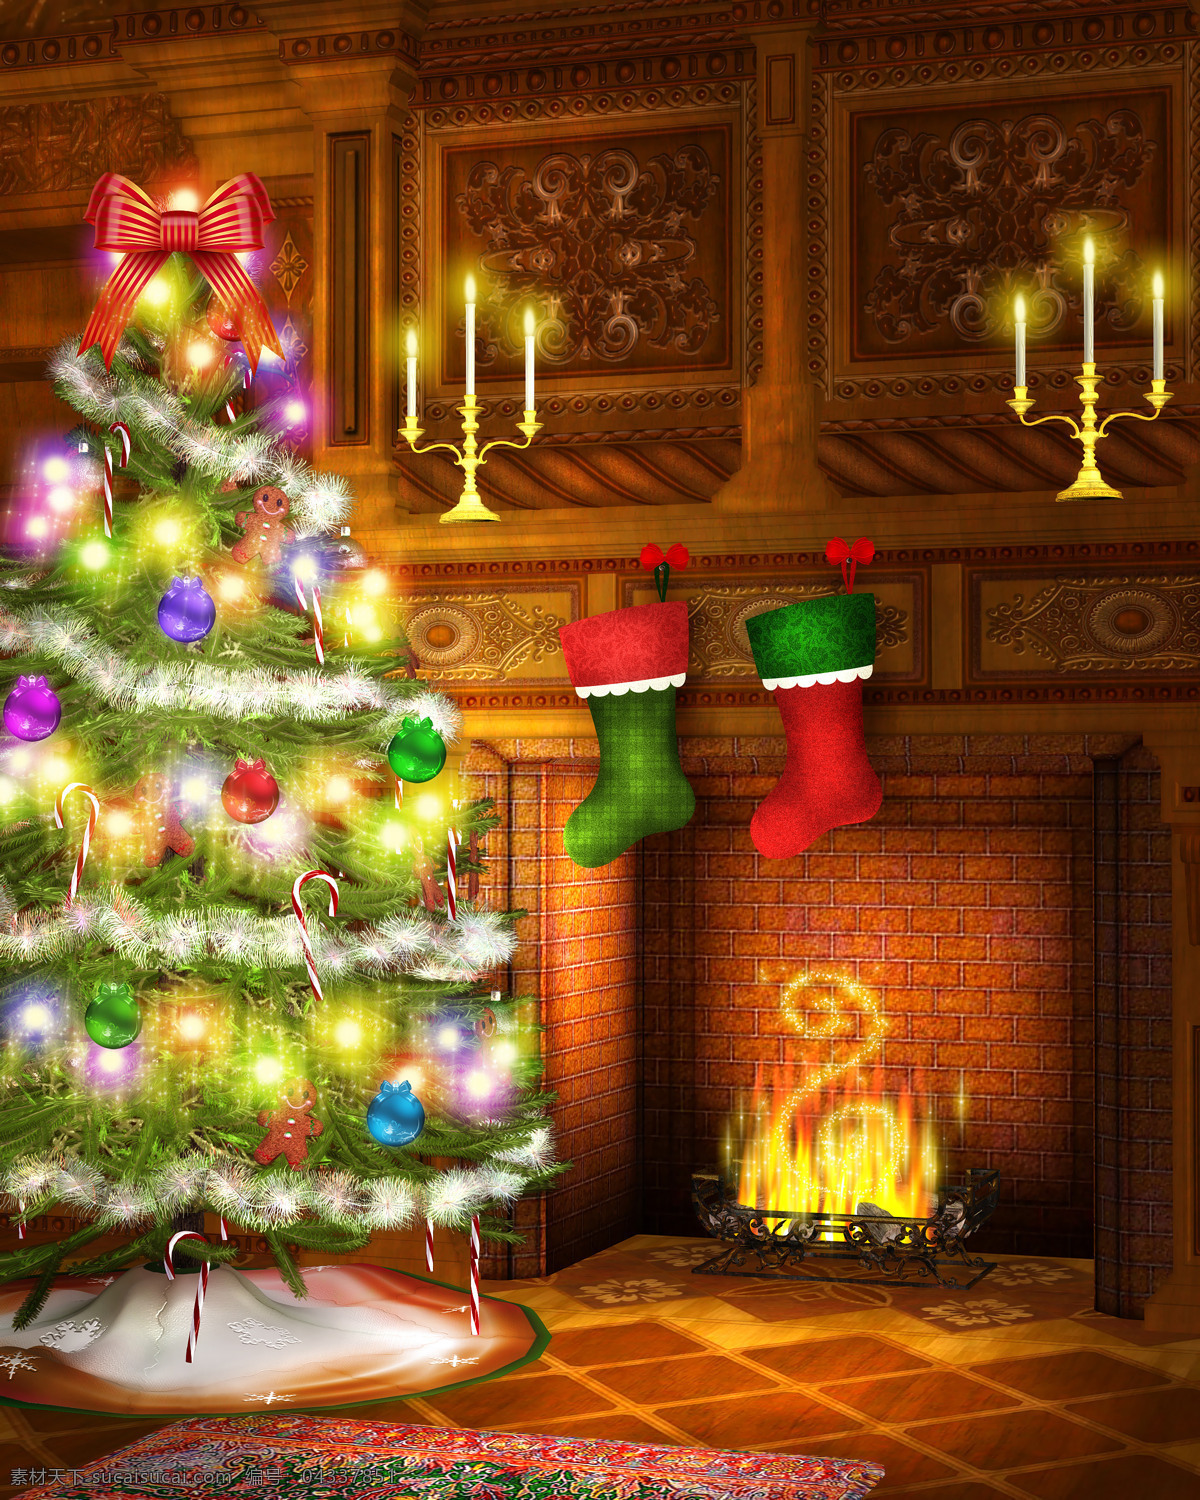 甜蜜 圣诞节 节日 圣诞节快乐 雪花 梦幻 唯美 甜蜜圣诞节 圣诞节袜子 圣诞树 炉火 温暖 烛台 霓虹灯 圣诞节图片 生活百科